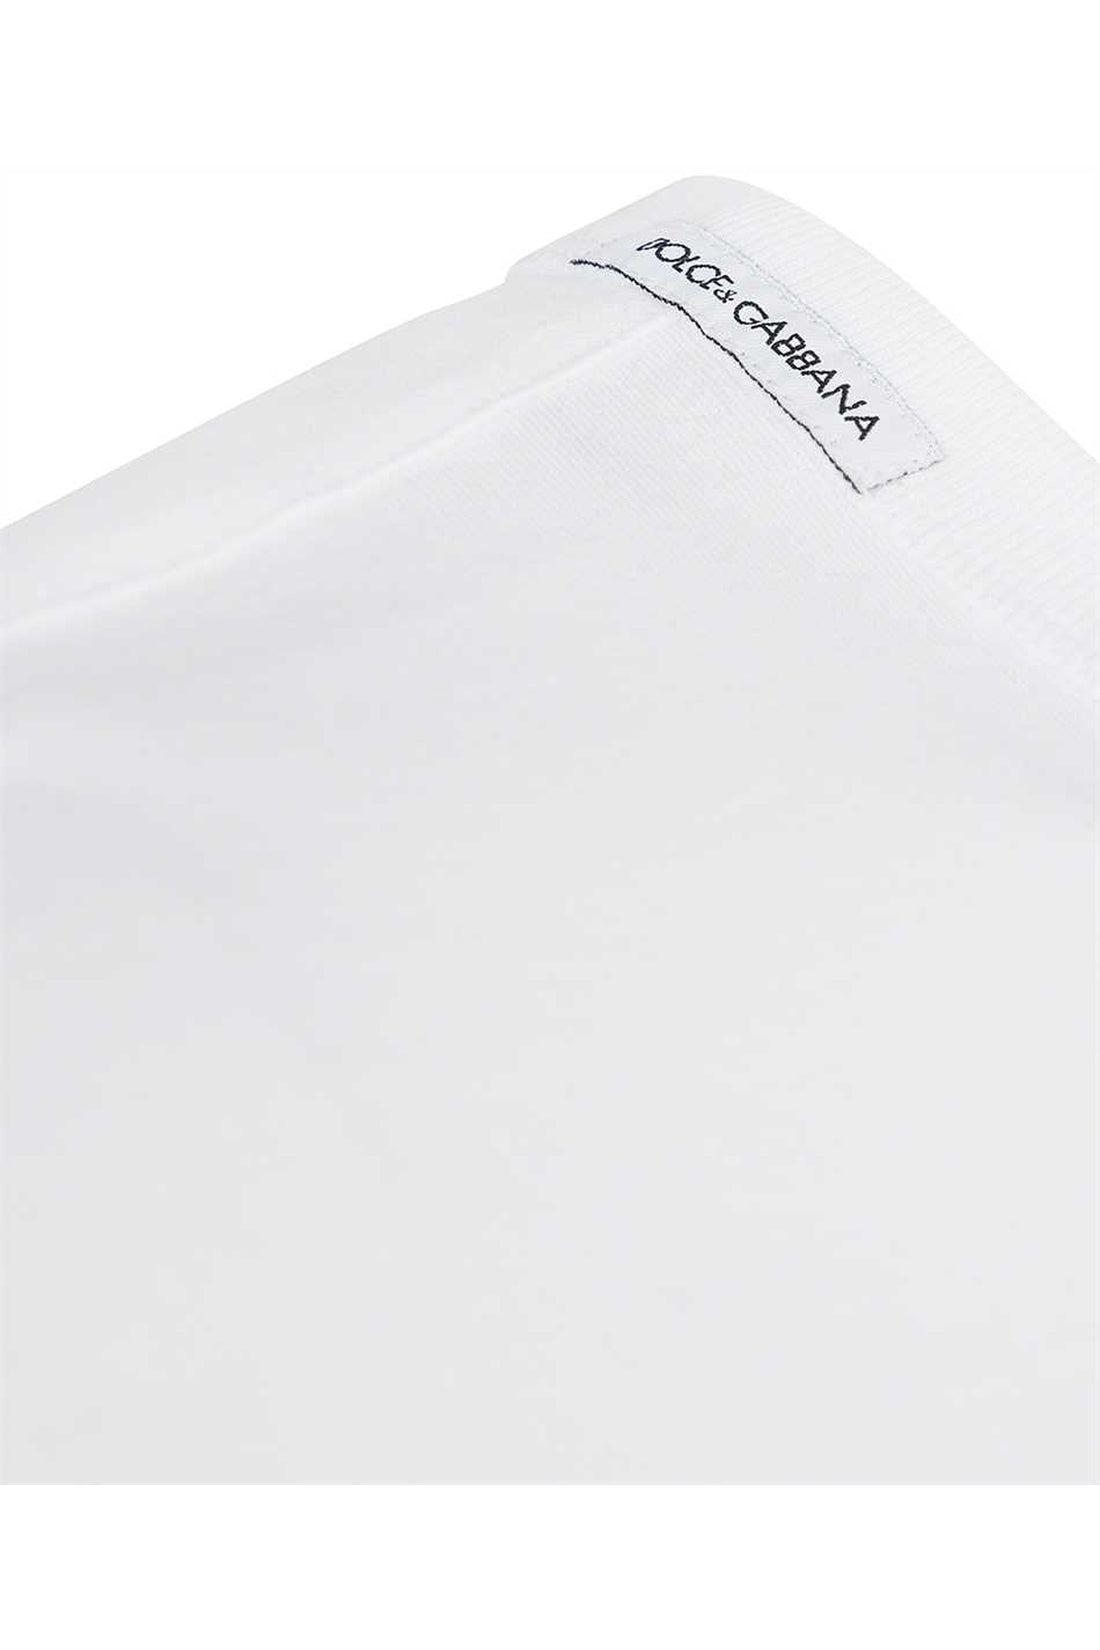 Dolce & Gabbana-OUTLET-SALE-Cotton henley T-shirt-ARCHIVIST